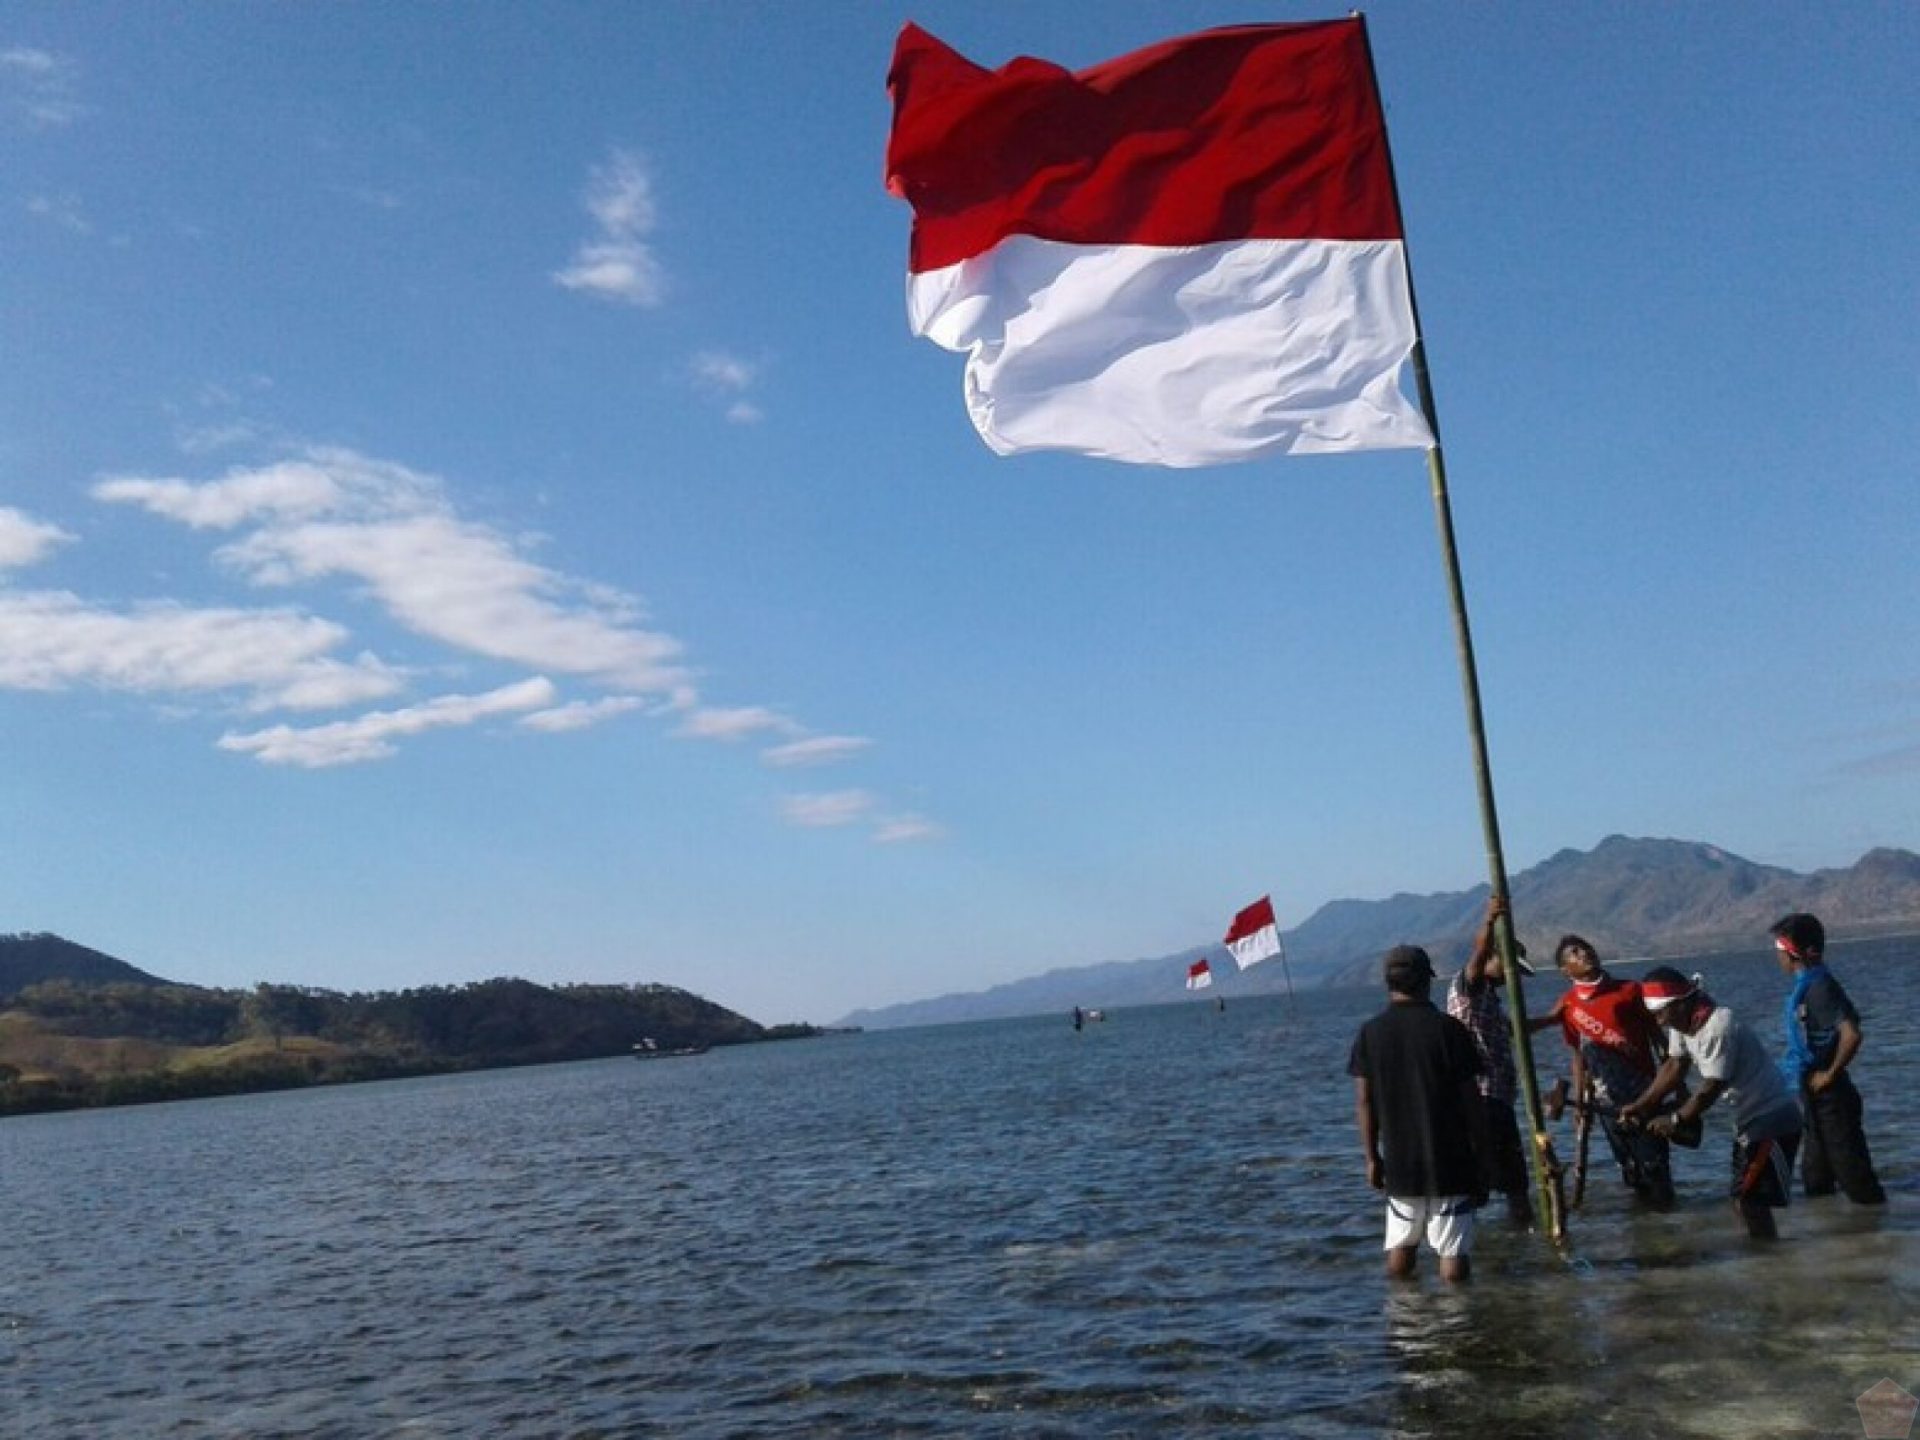 Kumpulan Gambar Bendera Indonesia, Asal Usul, Rancangan, dan Peraturan